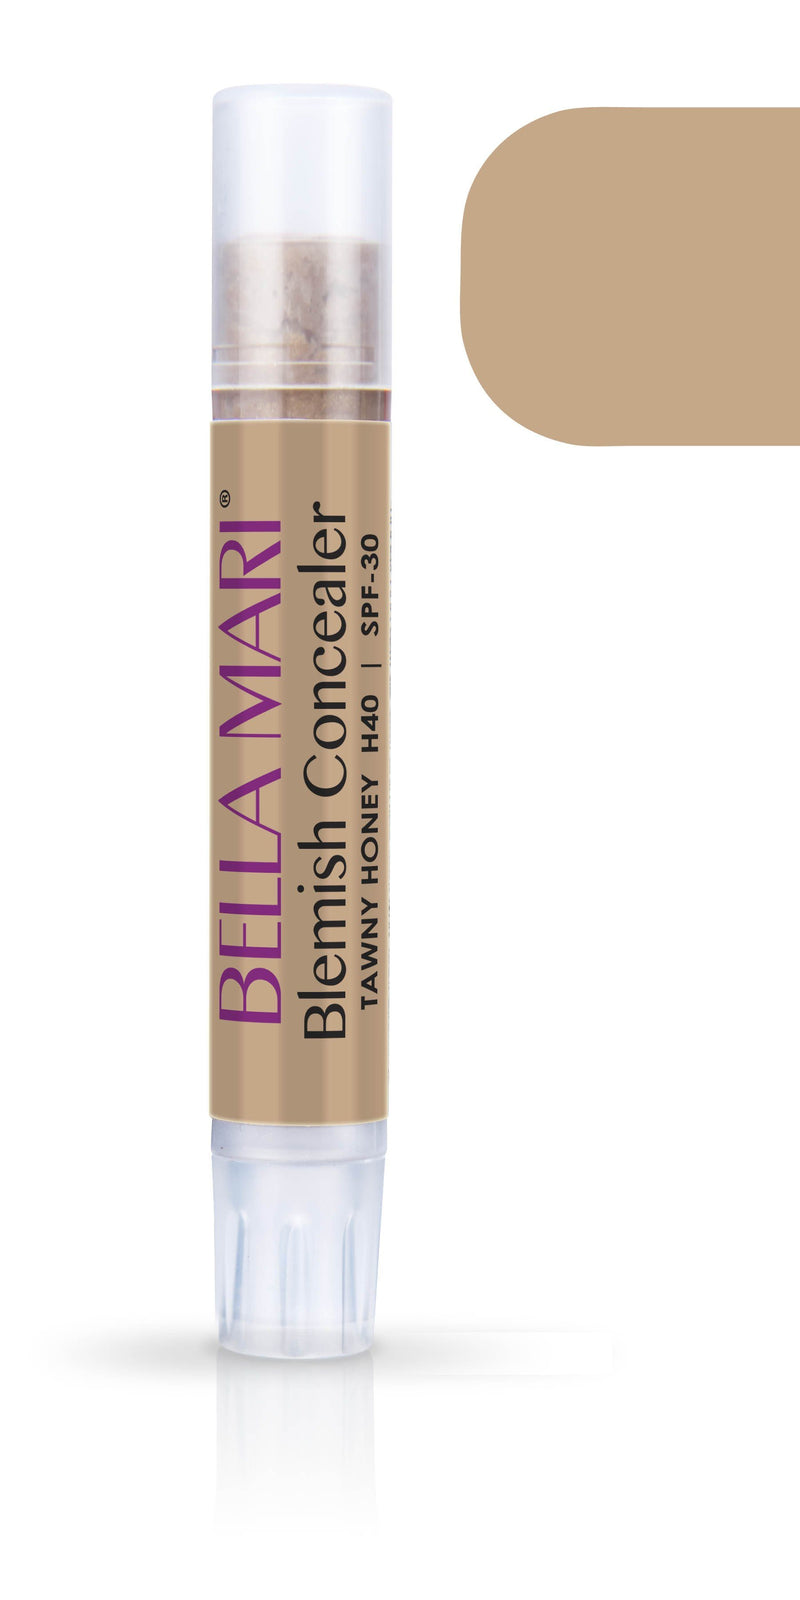 Bella Mari Natural Blemish Concealer Stick; 0.1floz - Bella Mari Natural Blemish Concealer Stick; 0.1floz - Tawny Honey